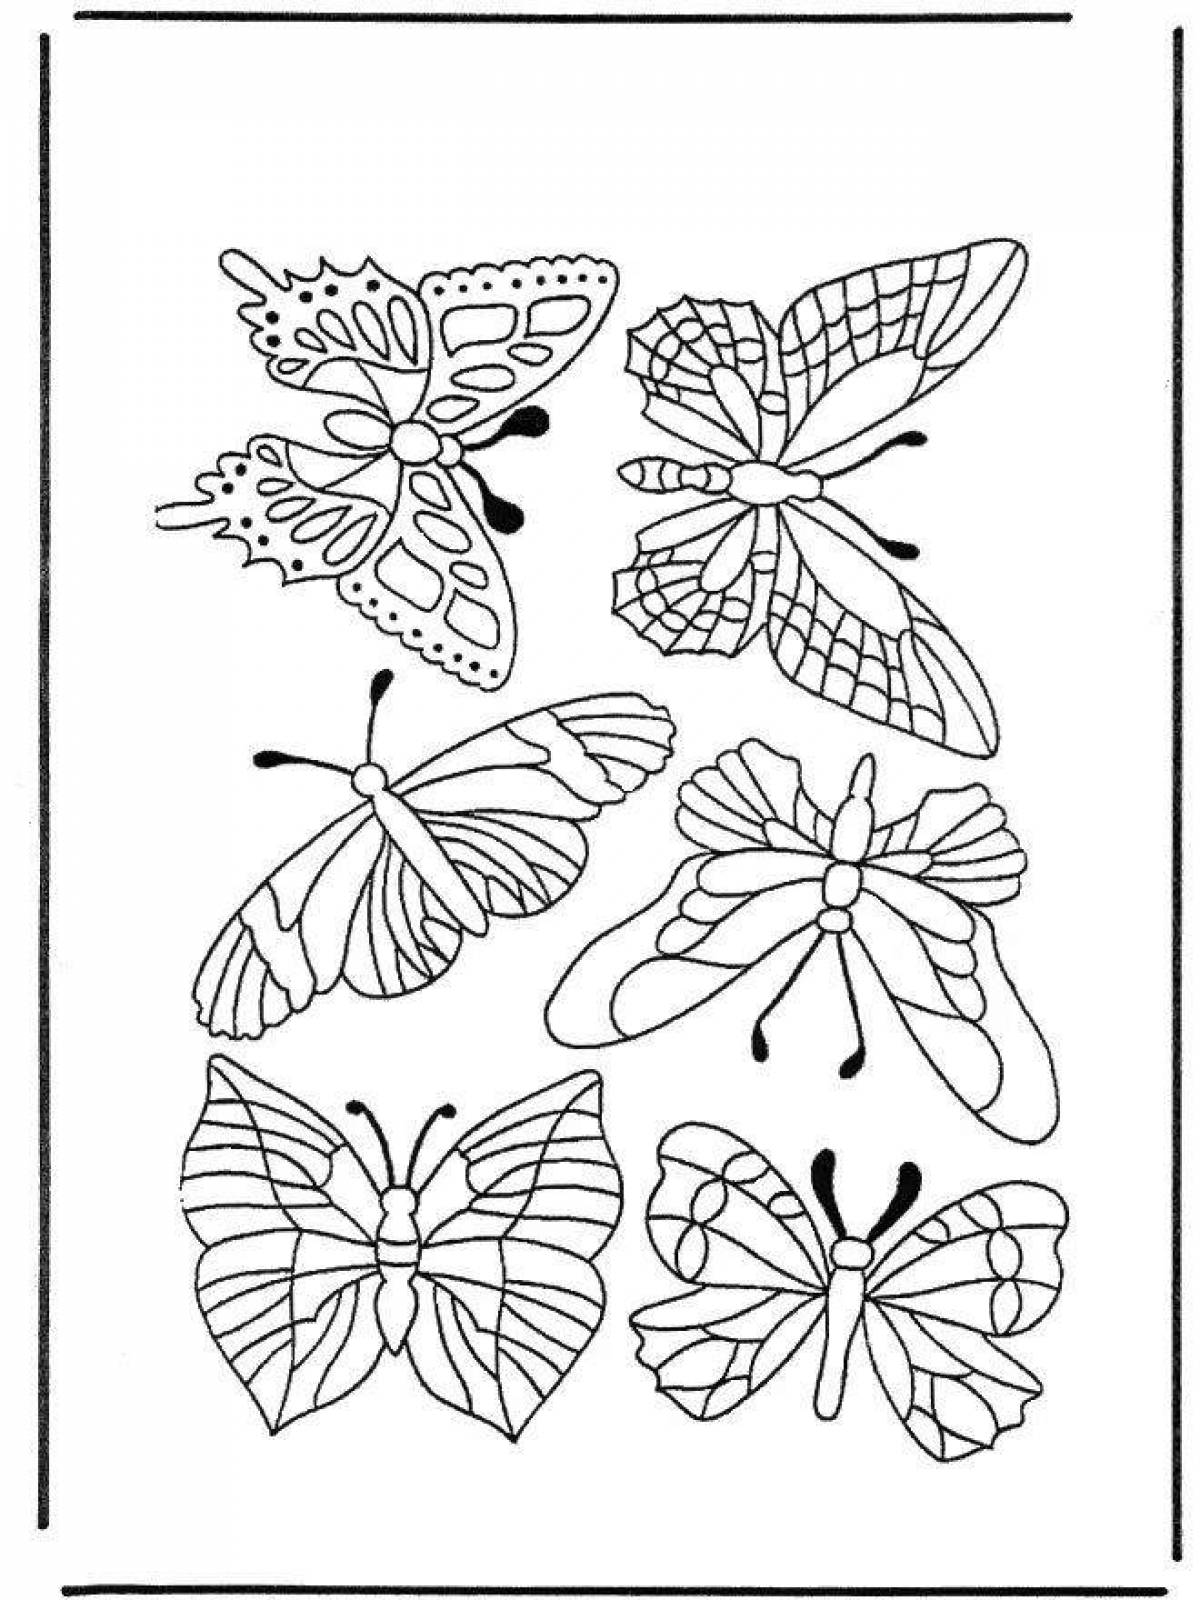 Ослепительное множество бабочек на одном листе